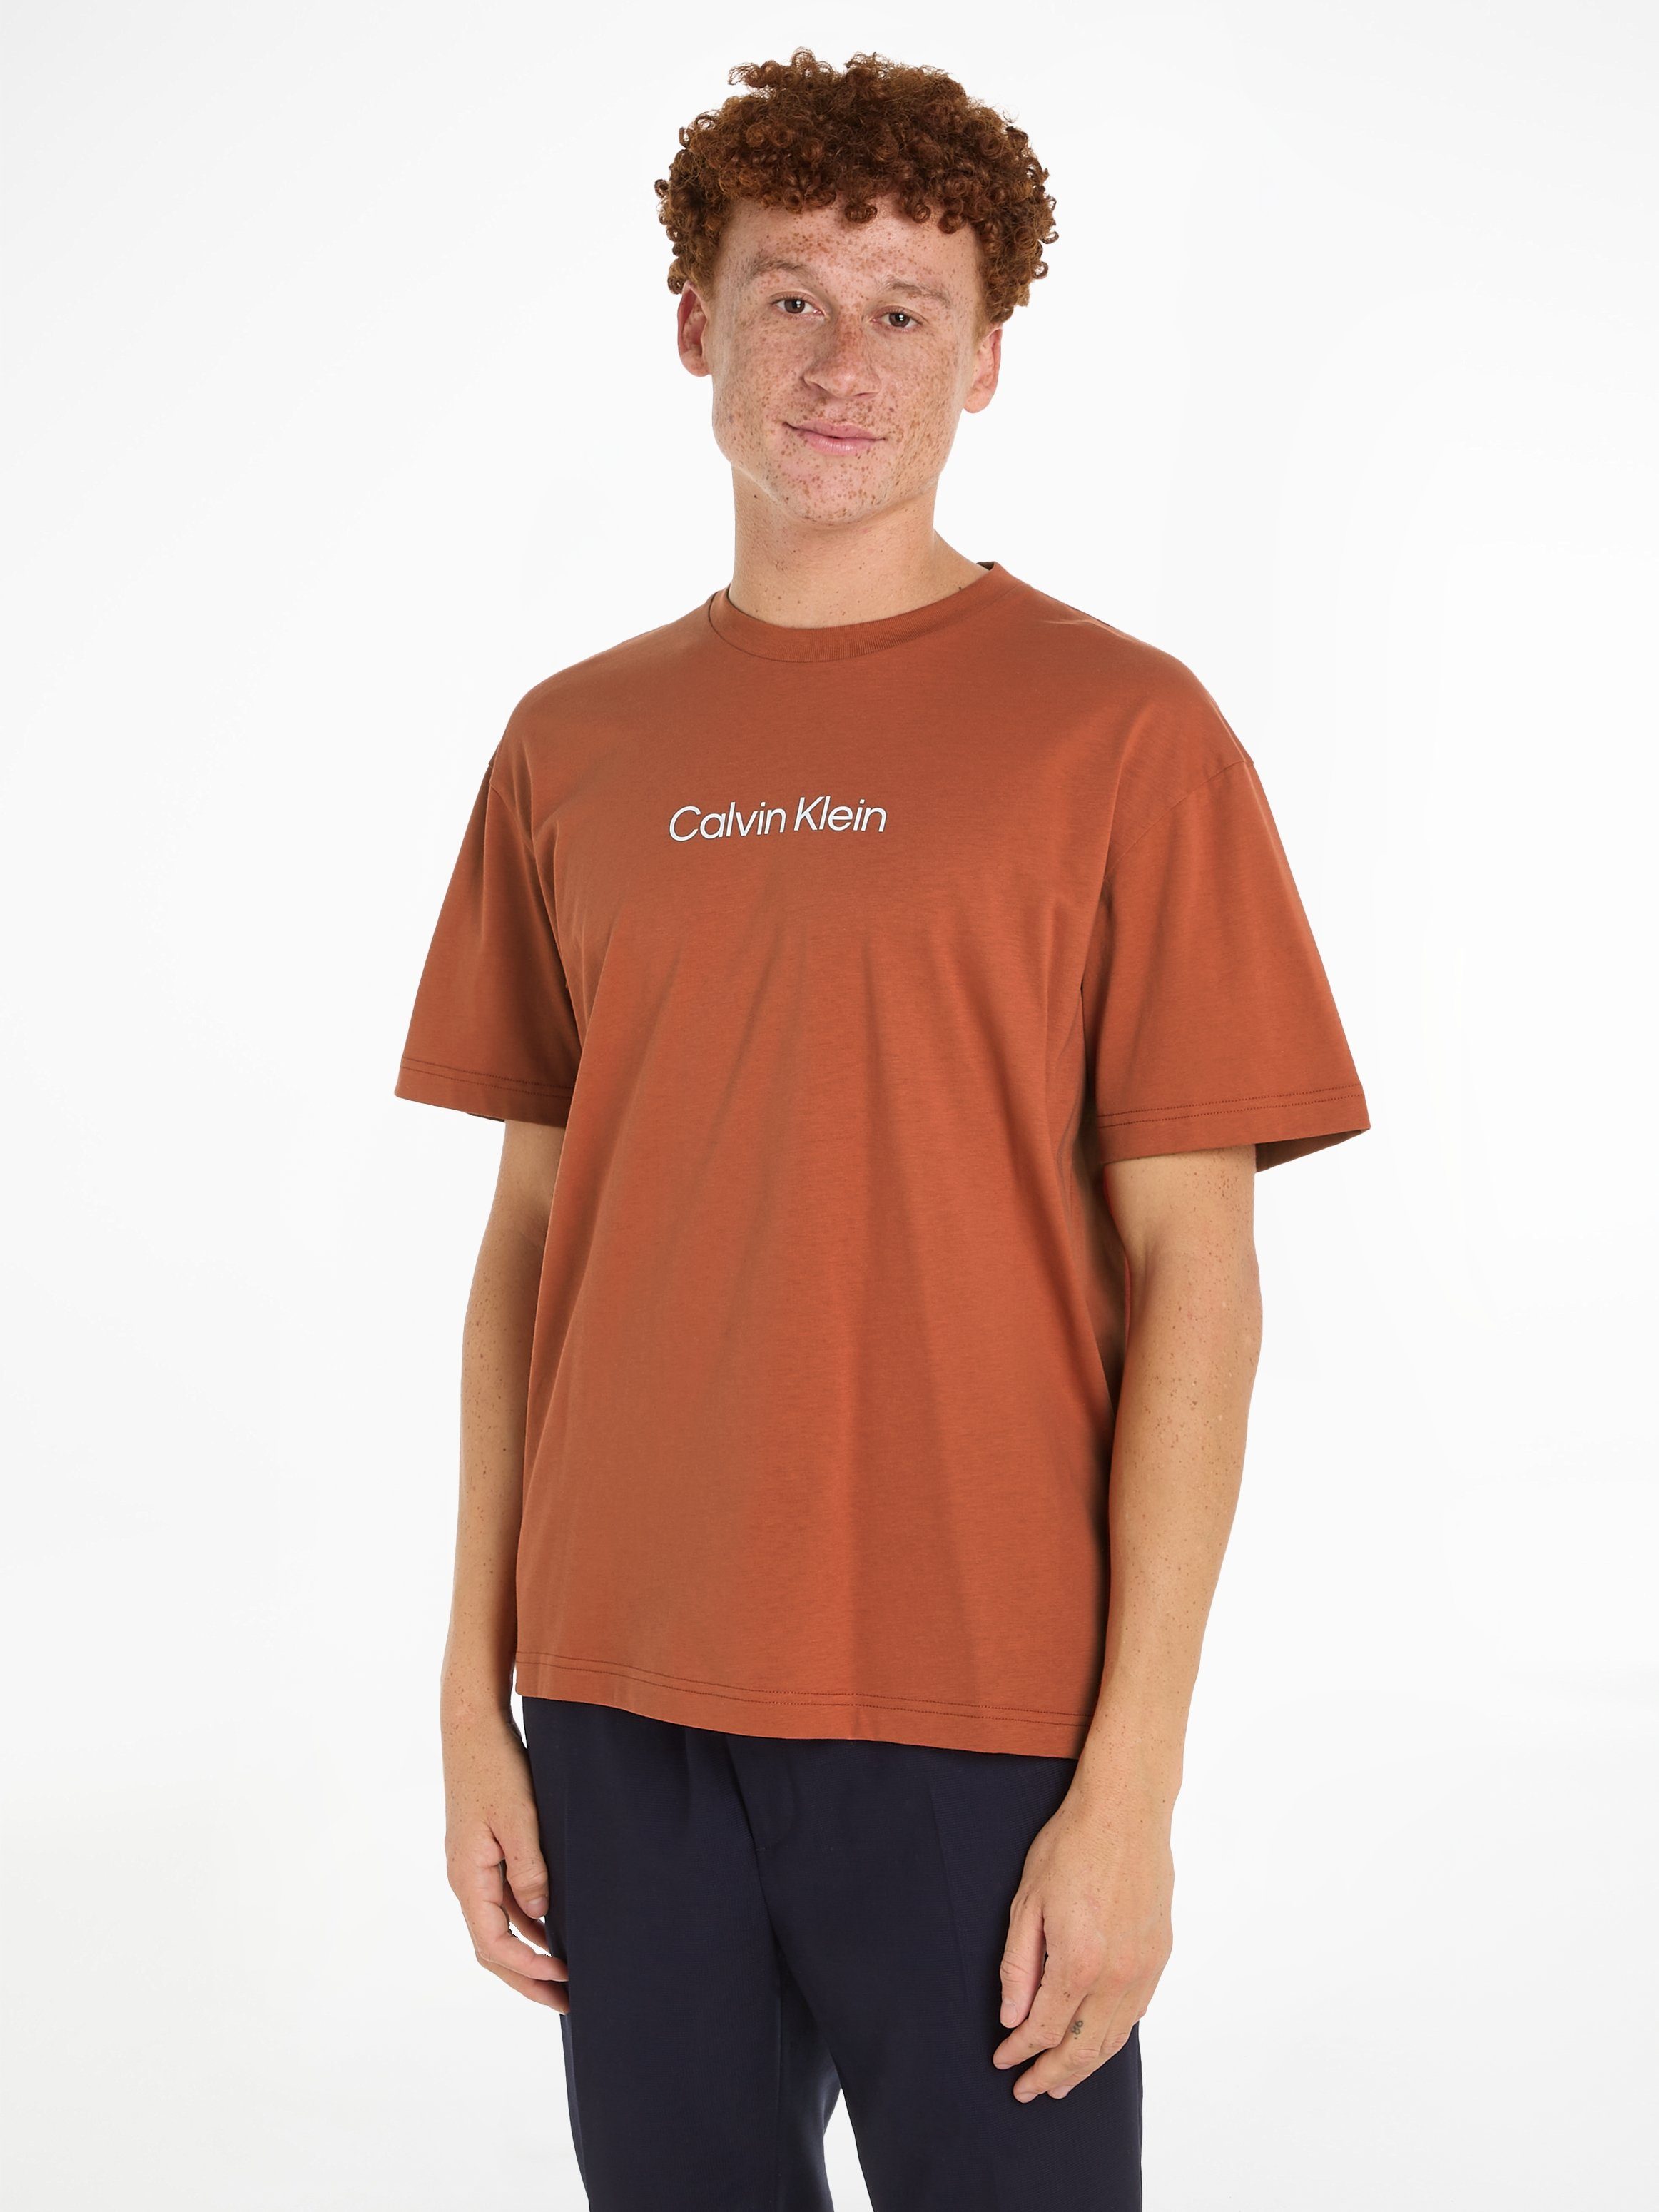 Calvin Klein T-Shirt HERO LOGO COMFORT T-SHIRT mit aufgedrucktem Markenlabel Copper Sun